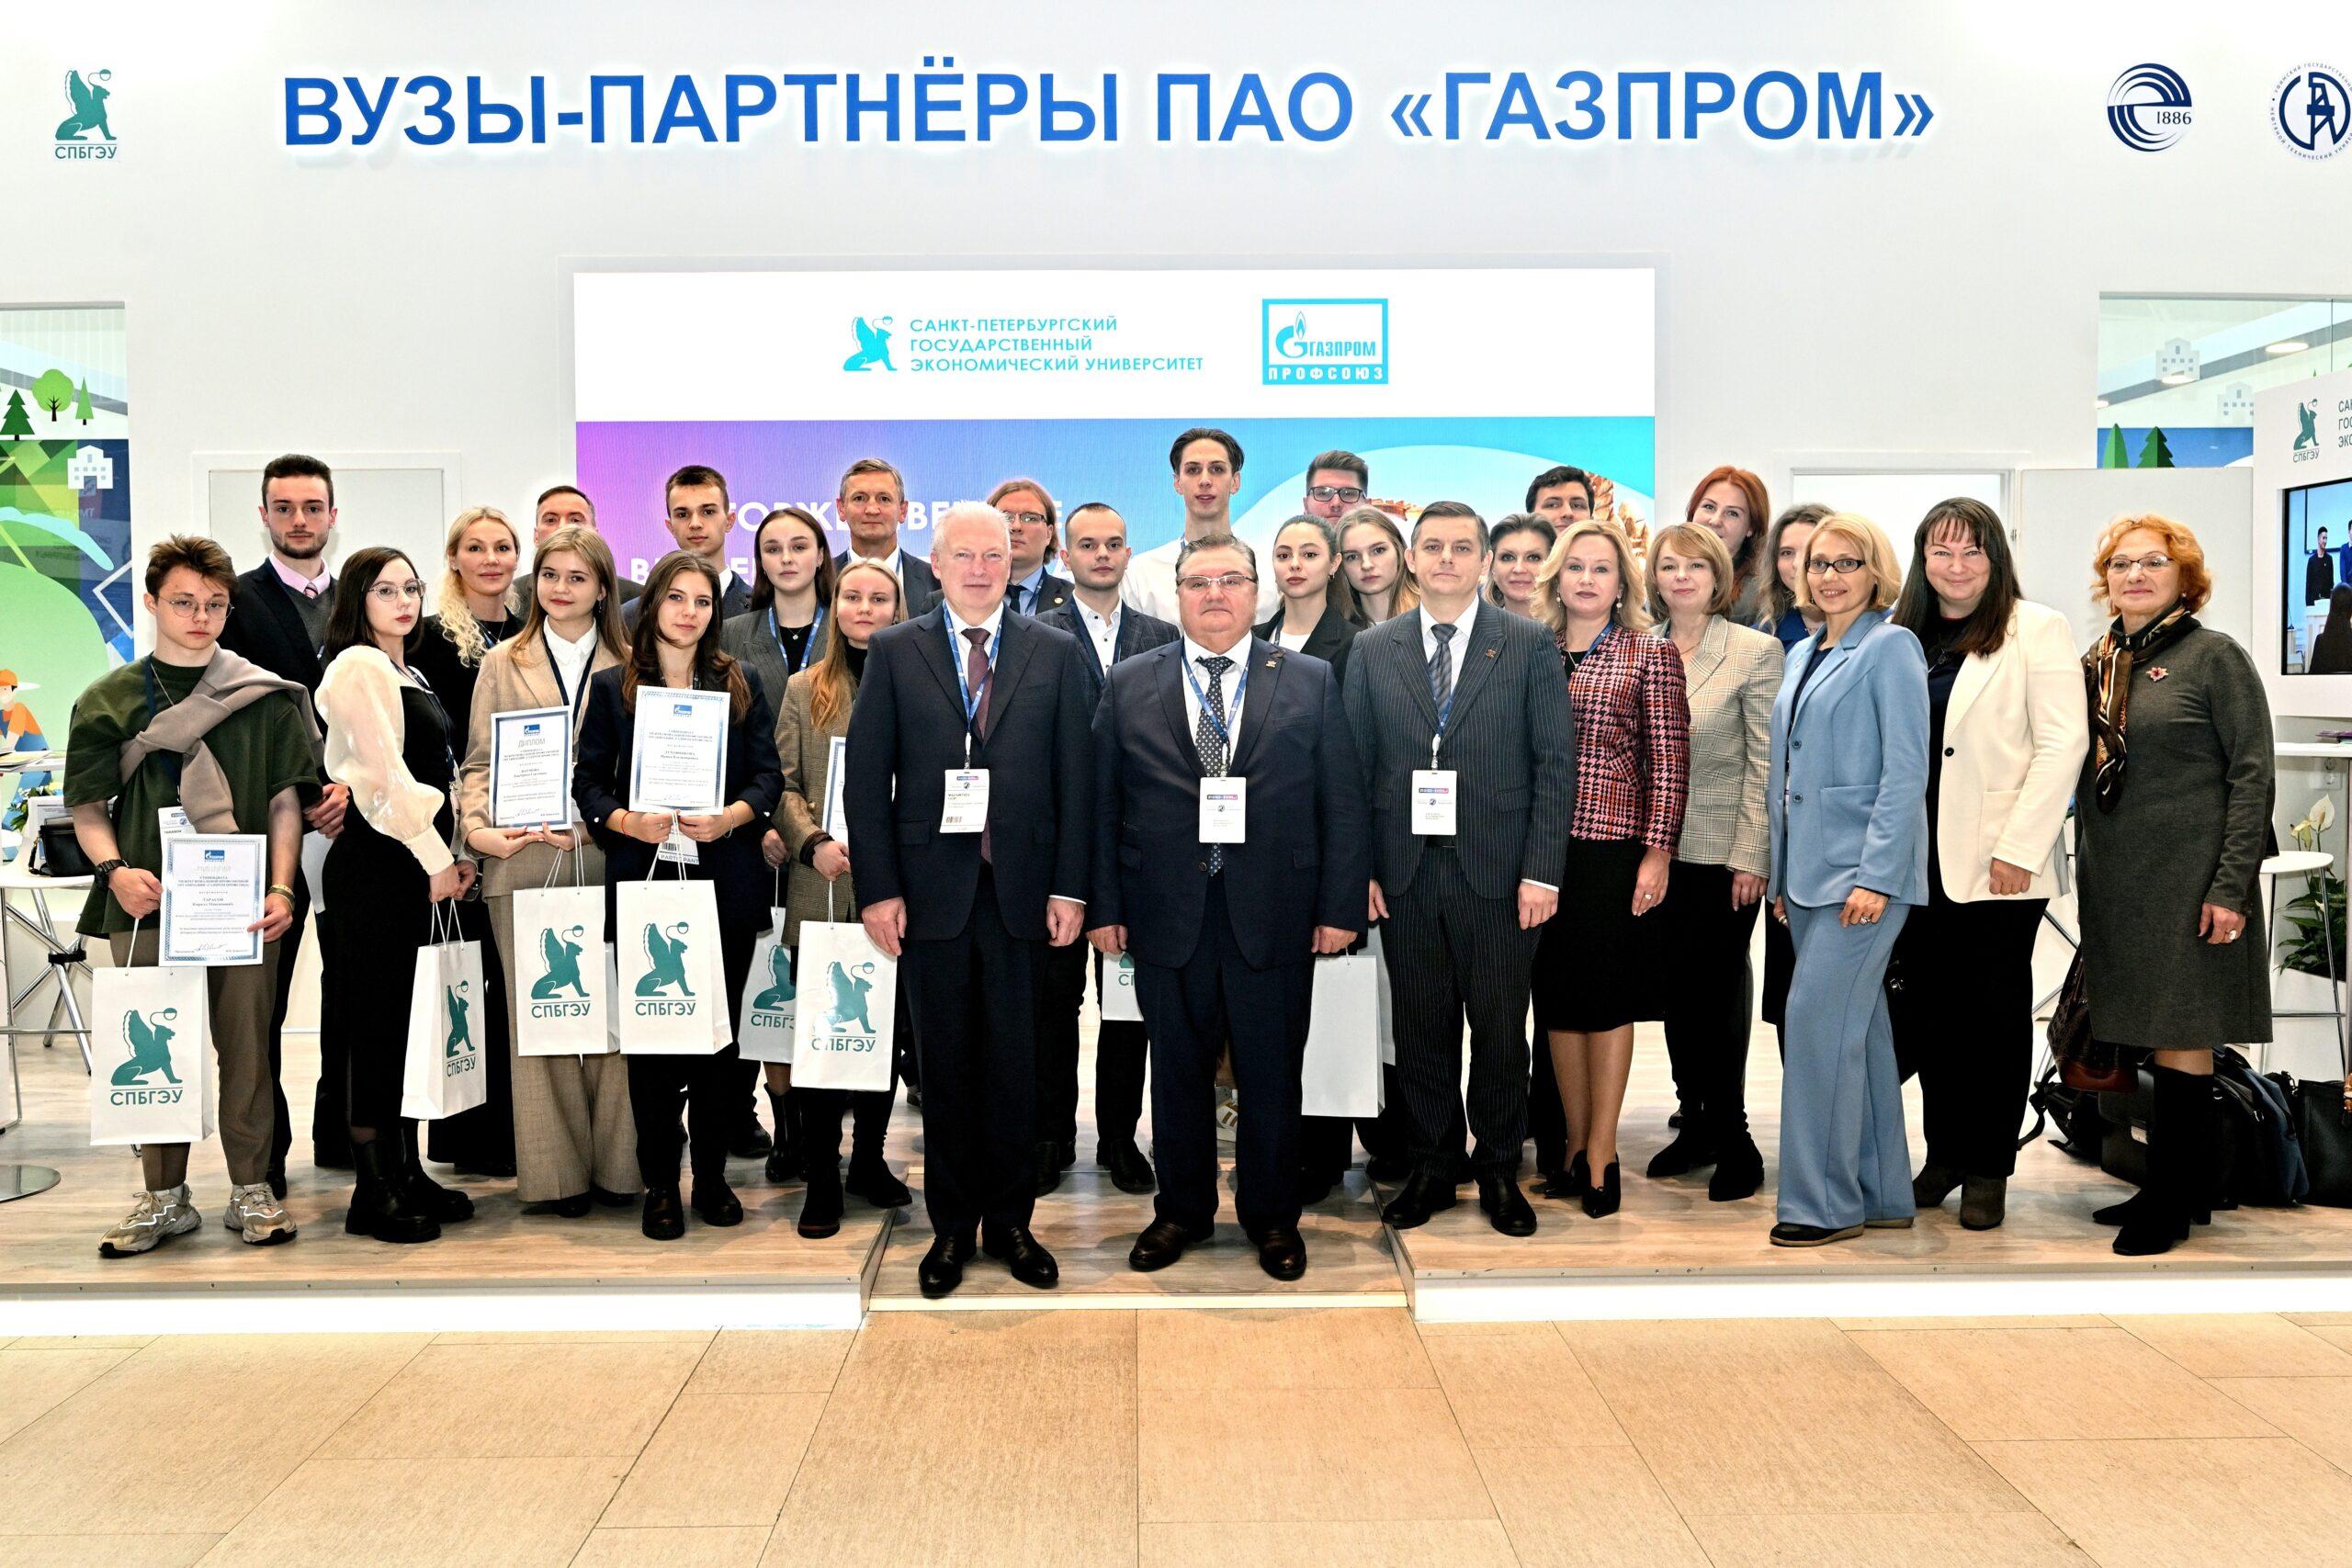 Студенты СПбГЭУ получили именную стипендию председателя «Газпром профсоюз»